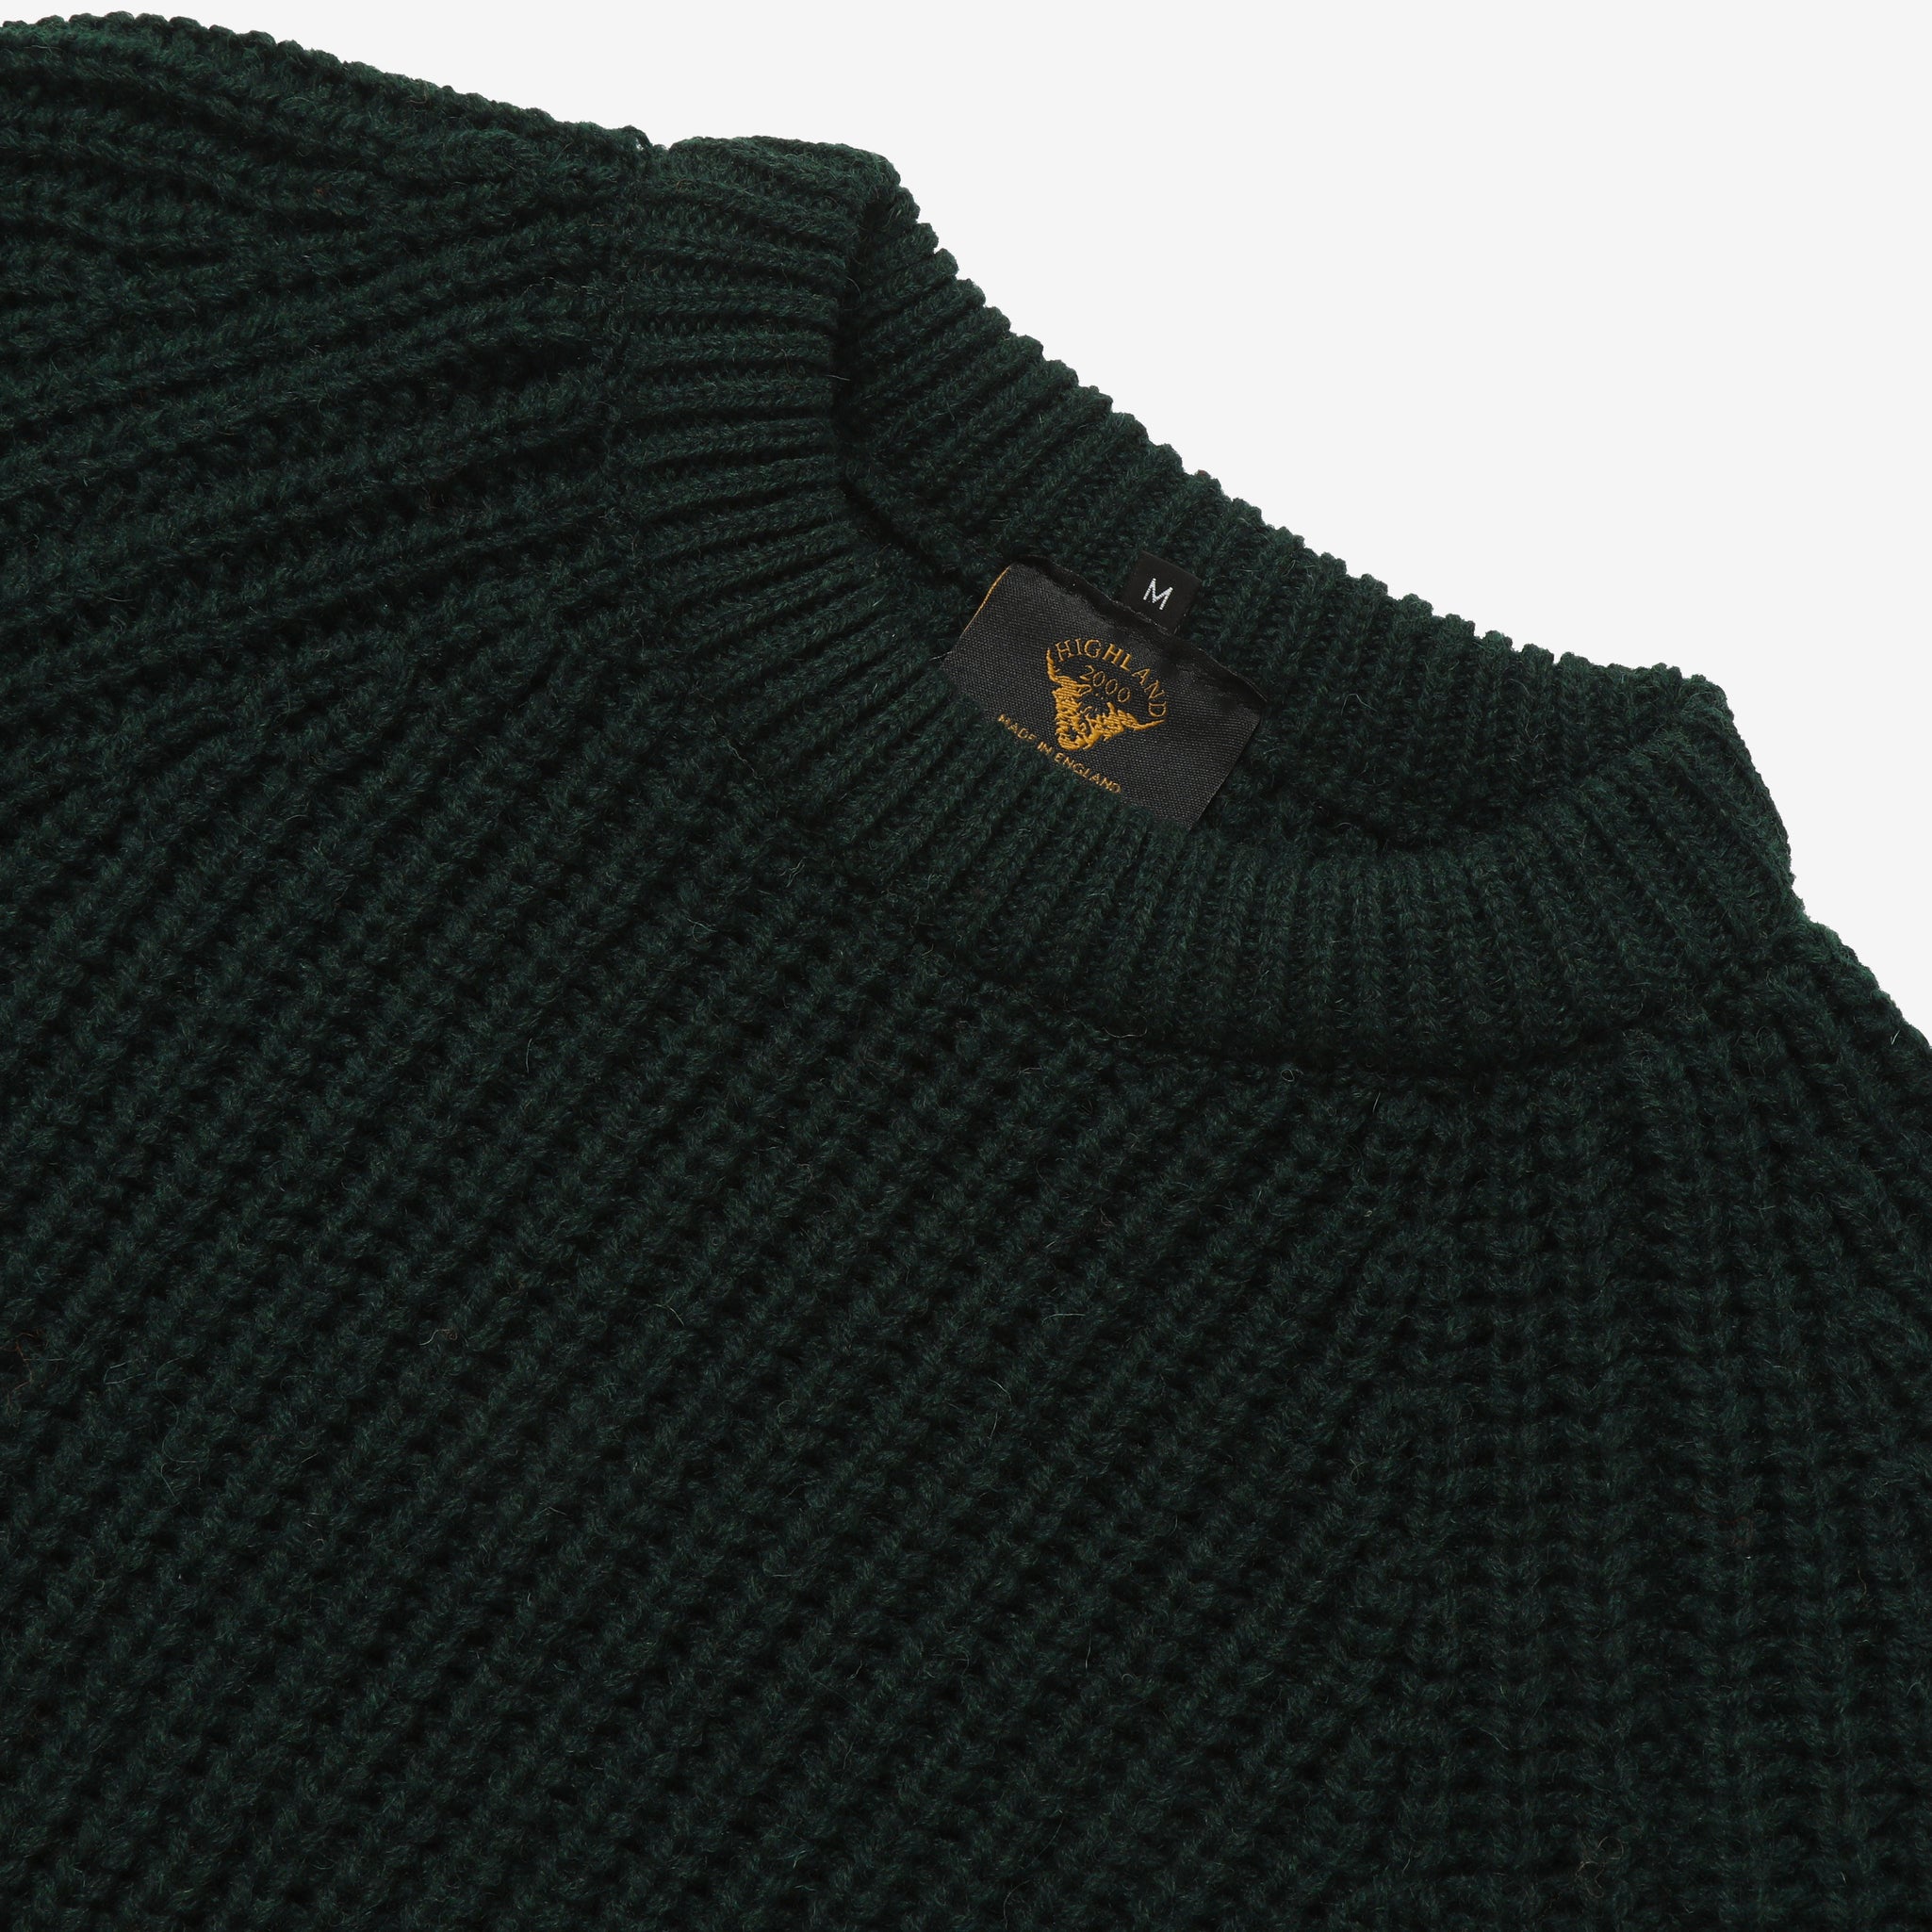 Fisherman Sweater - Green